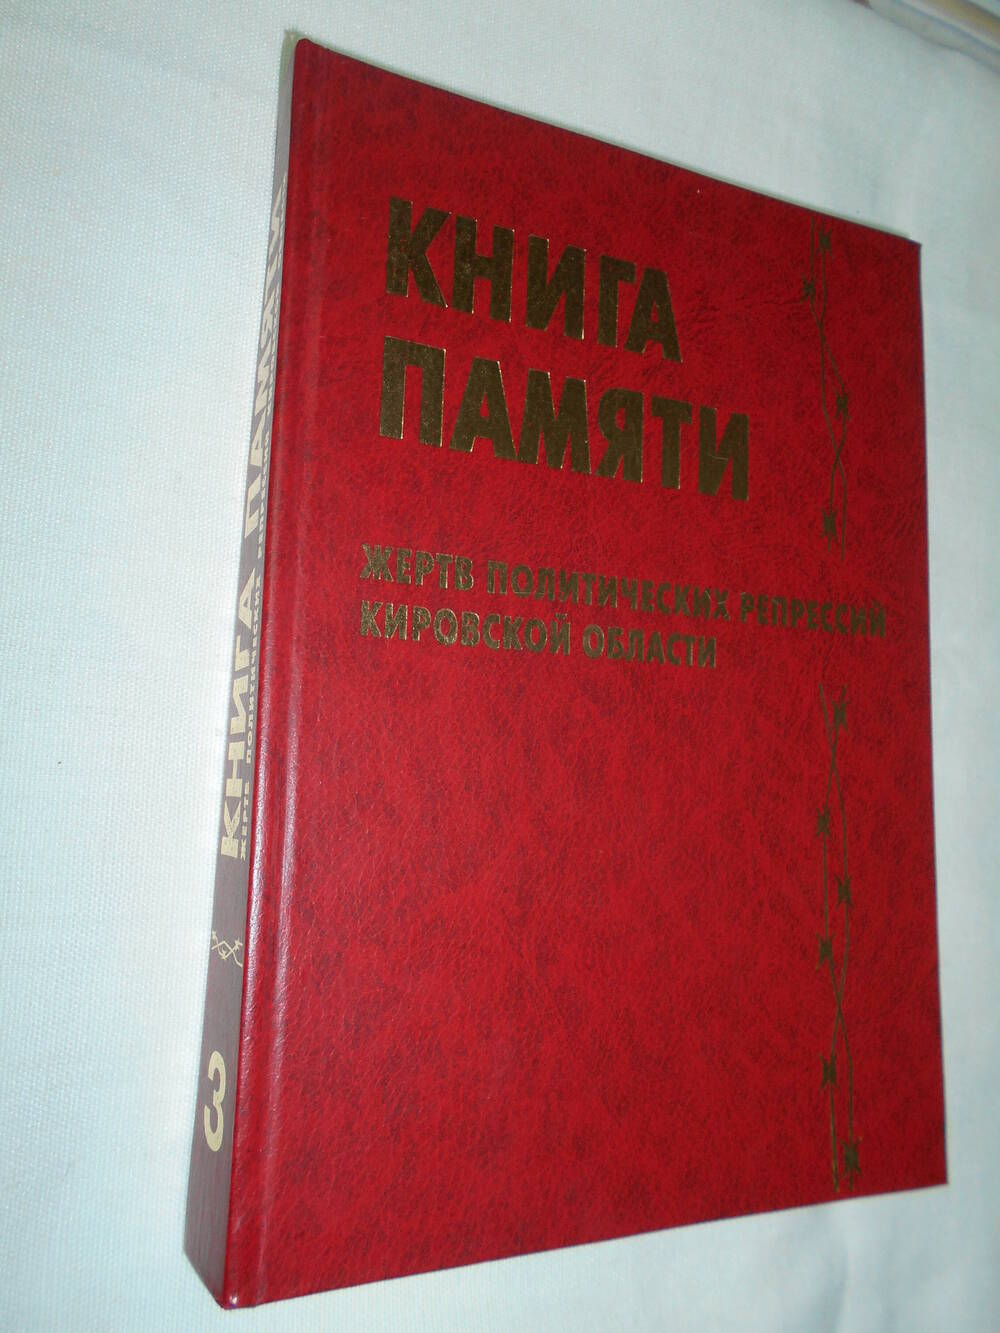 Книга памяти жертв политических репрессий кировской области. том 3.